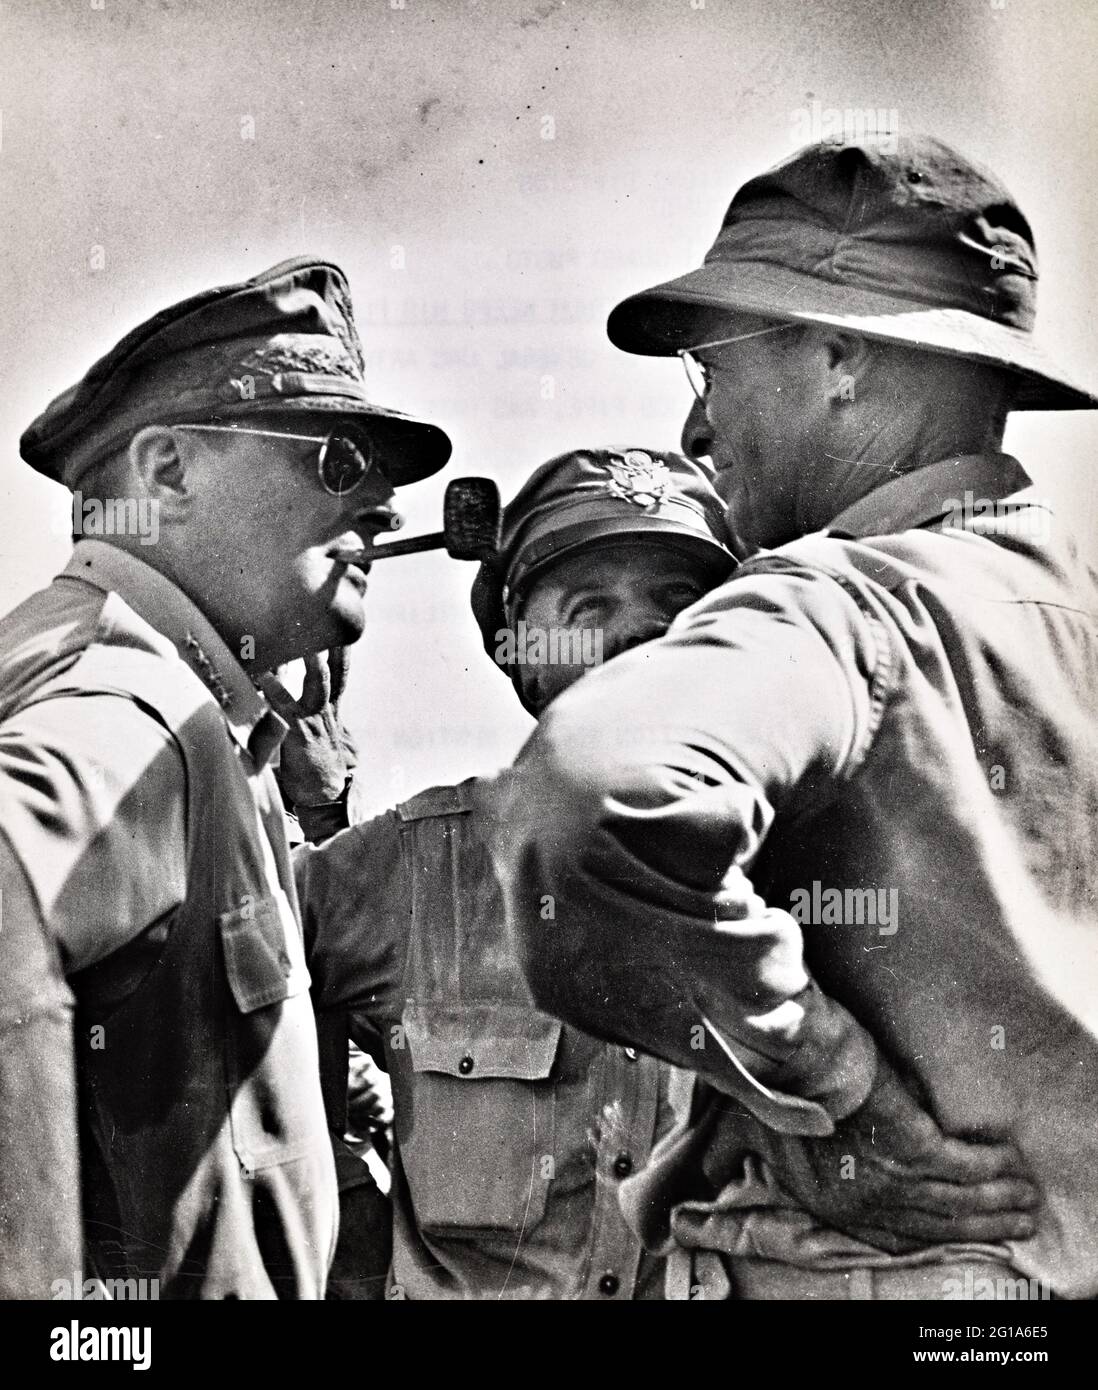 MacArthur hält sein Versprechen - Diese bemerkenswerte Studie von General MacArthur, der sich nonchalant auf seine Maiskolben-Pfeife schnüffelt, wurde von einem Kampffotografen der Küstenwache in dem historischen Moment angefertigt, als Mac Arthur den Strandkopf von Leyte Island untersuchte und seine berühmte Zusage „Ich werde zurückkehren“ erfüllte. Stockfoto